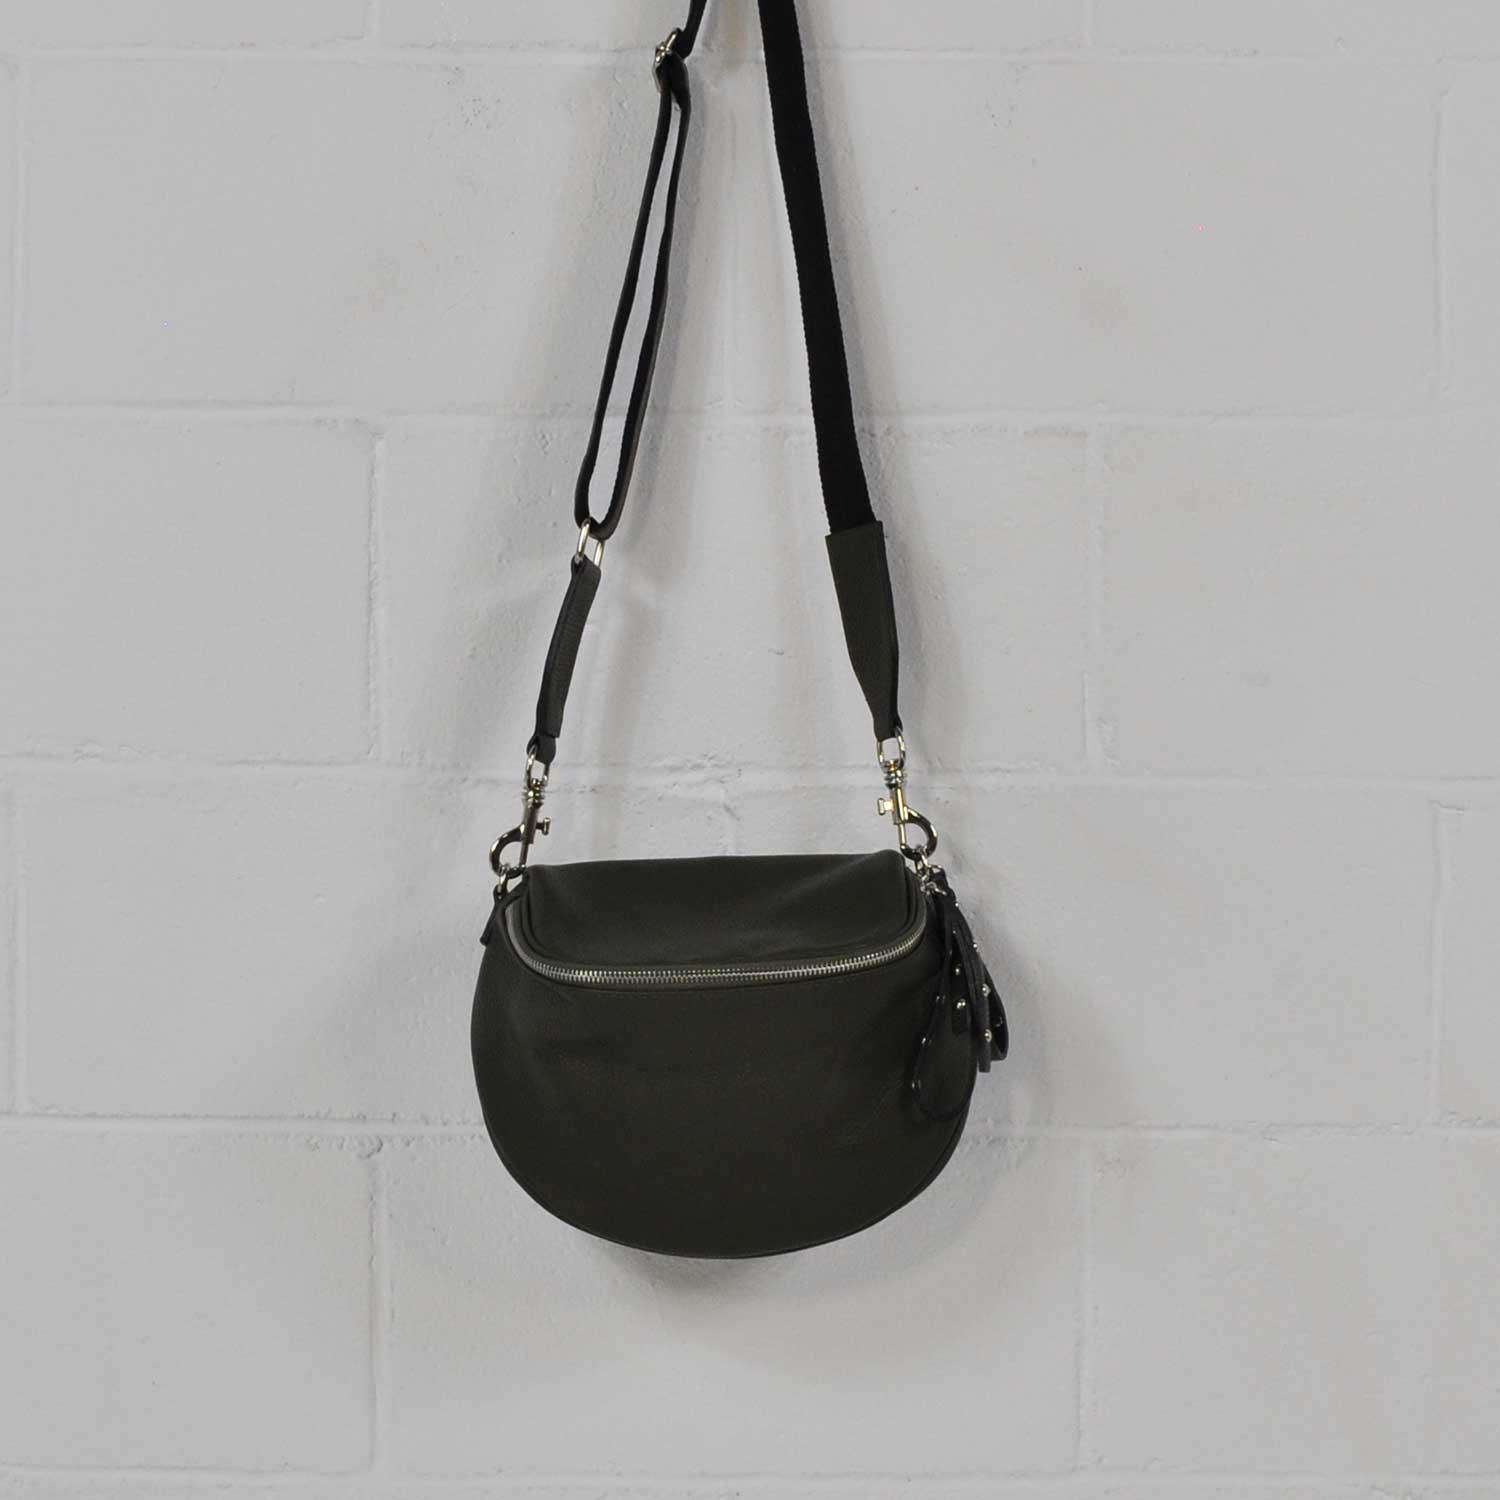 Kaki leather crossbody bag